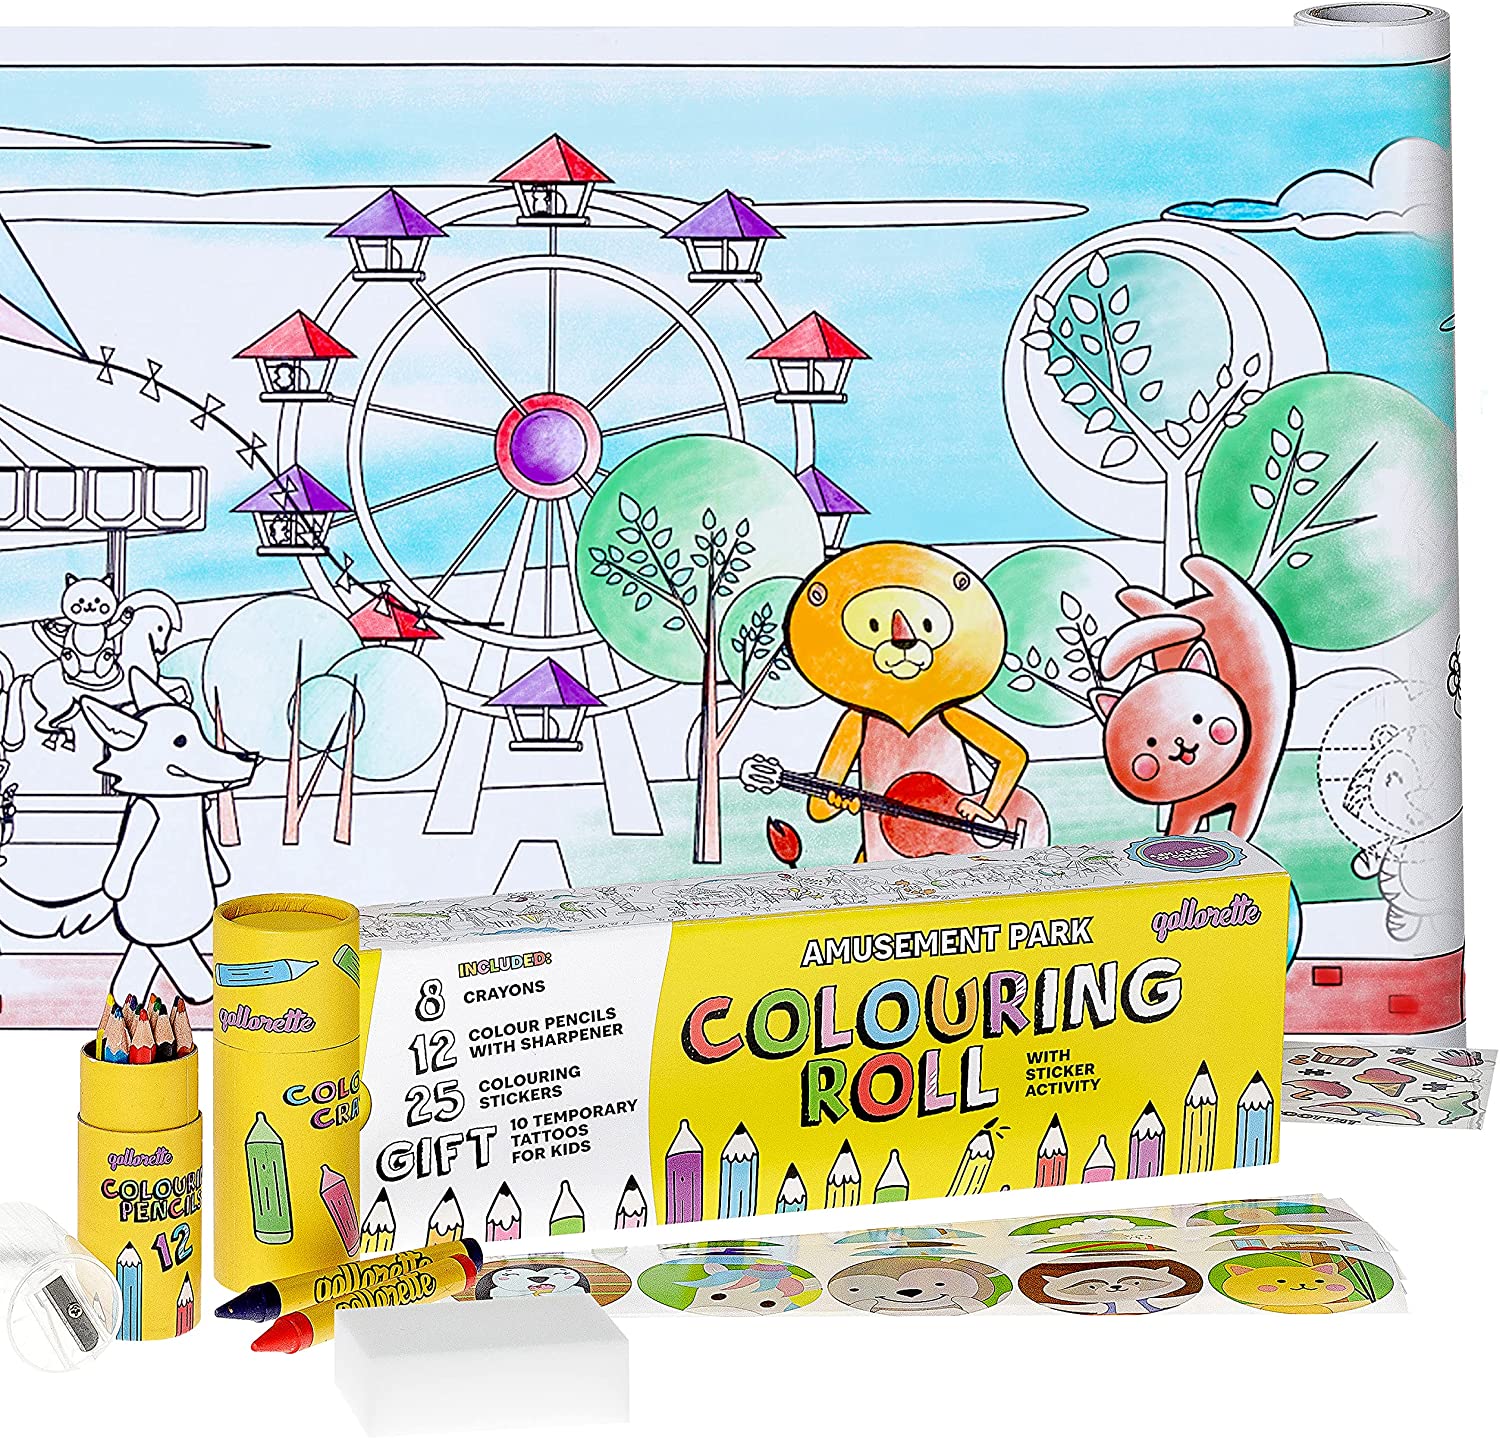 Missy's Product Reviews : Qollorette Amusement Park Colouring Roll